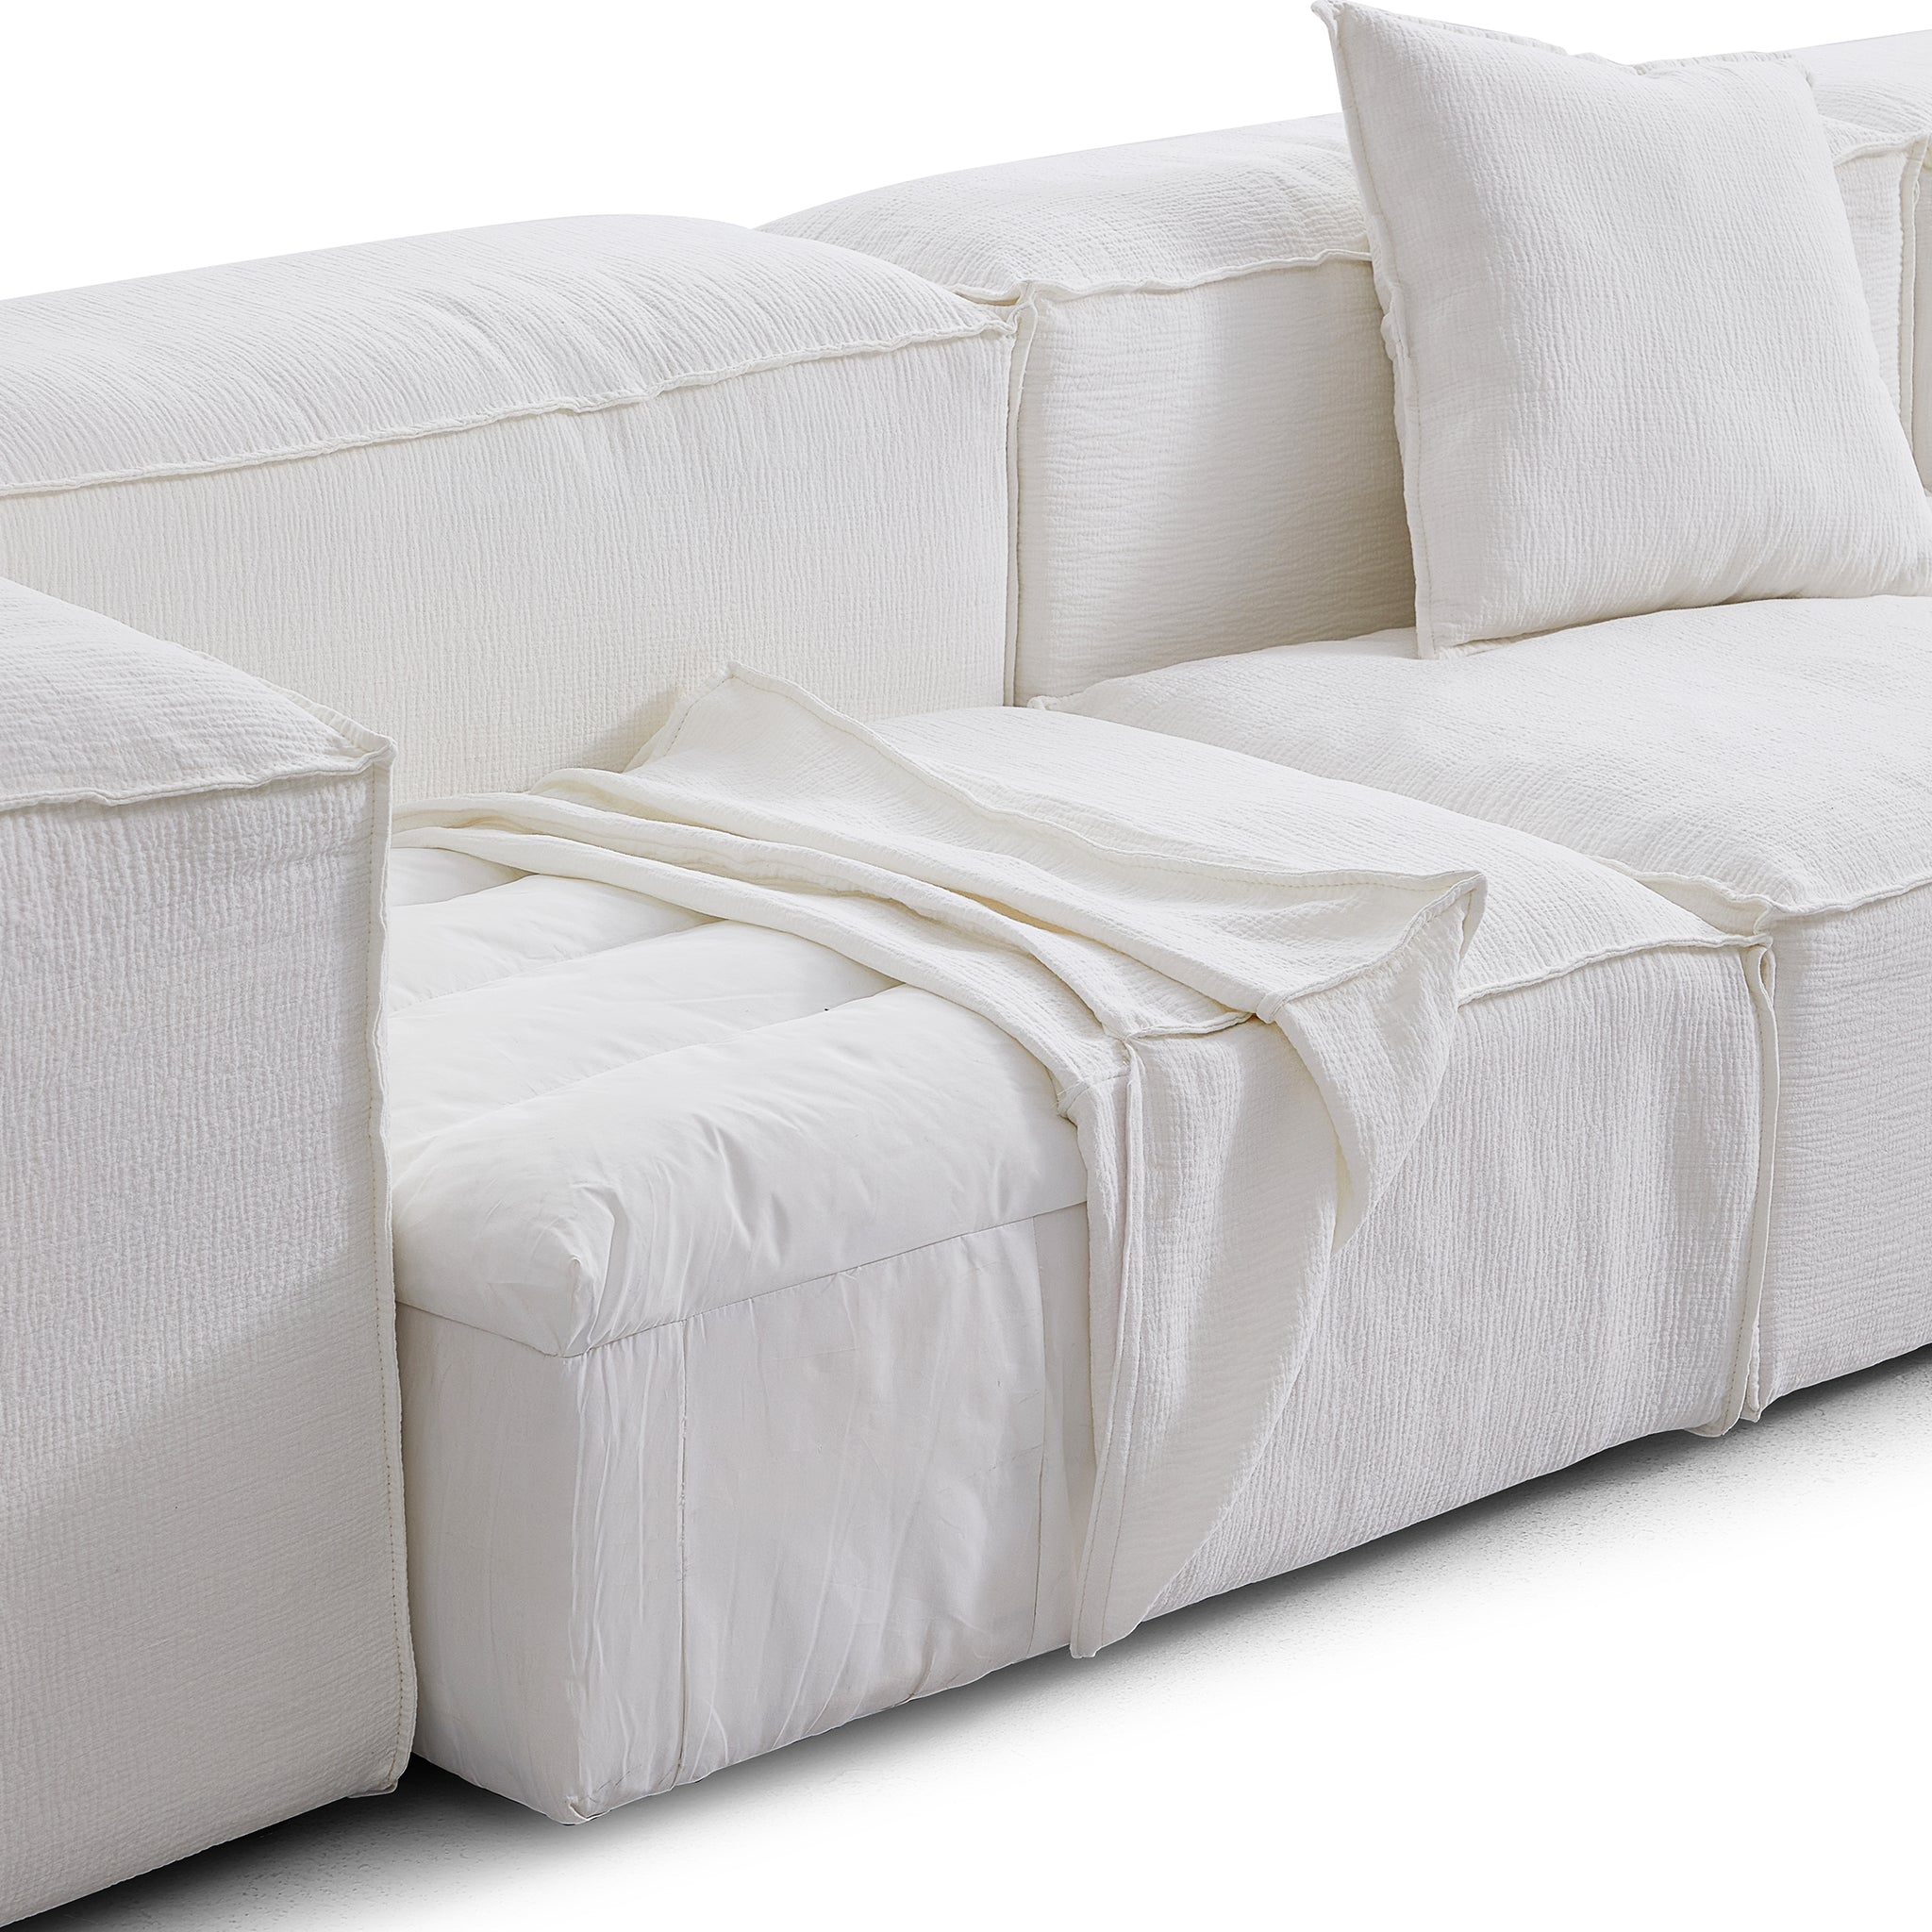 Freedom Modular White Sofa